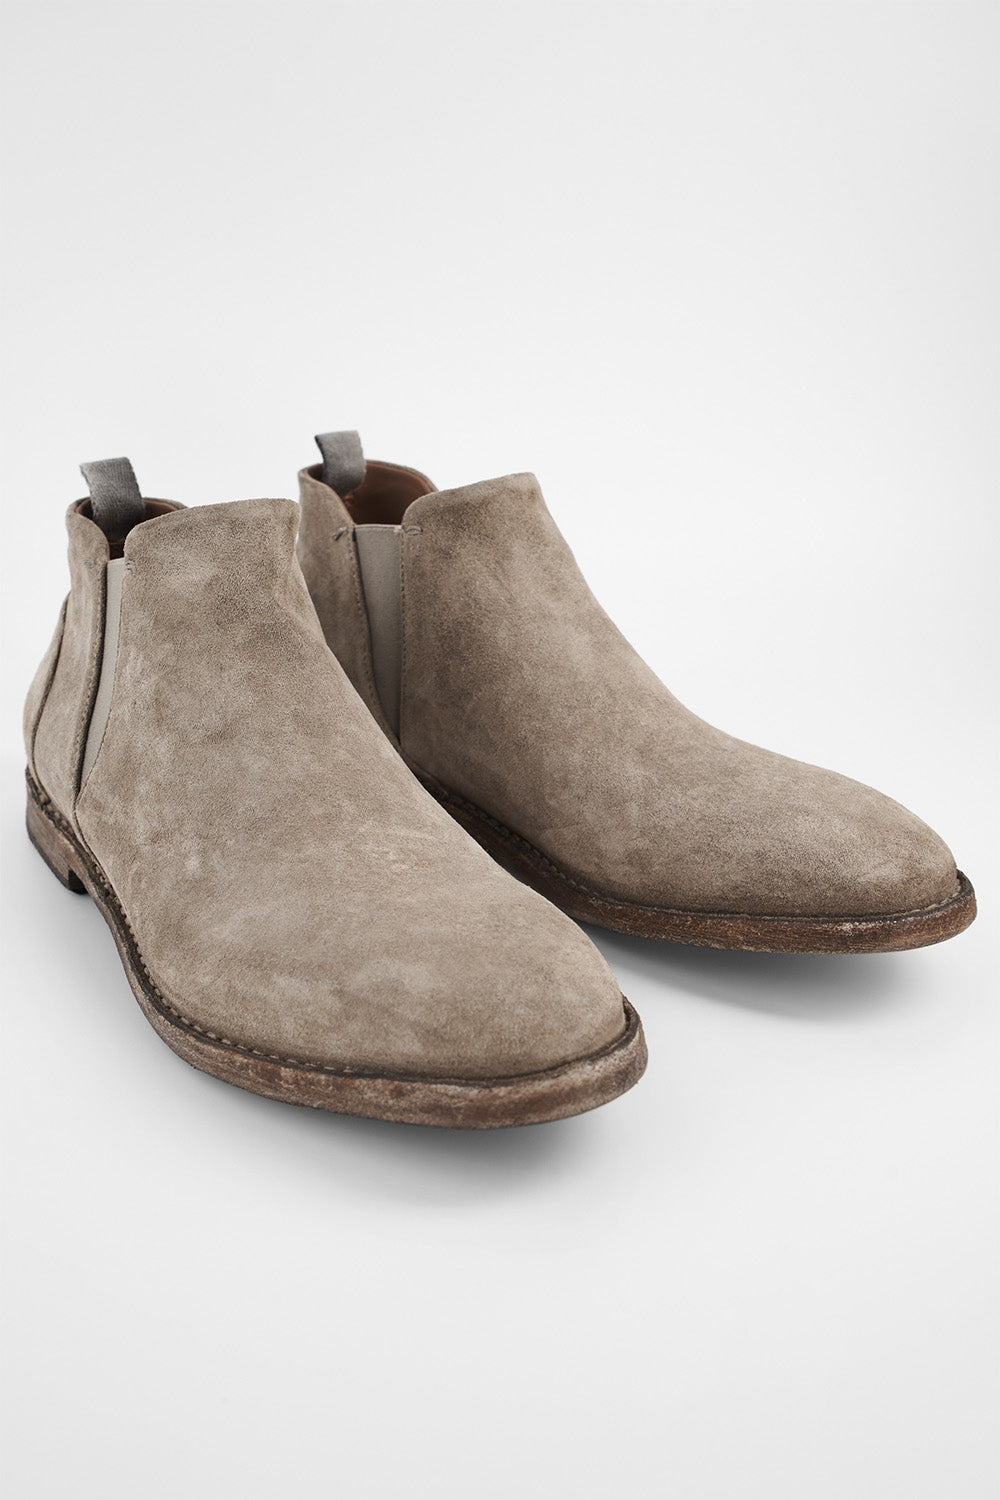 HAVEN linen-grey low chelsea boots.